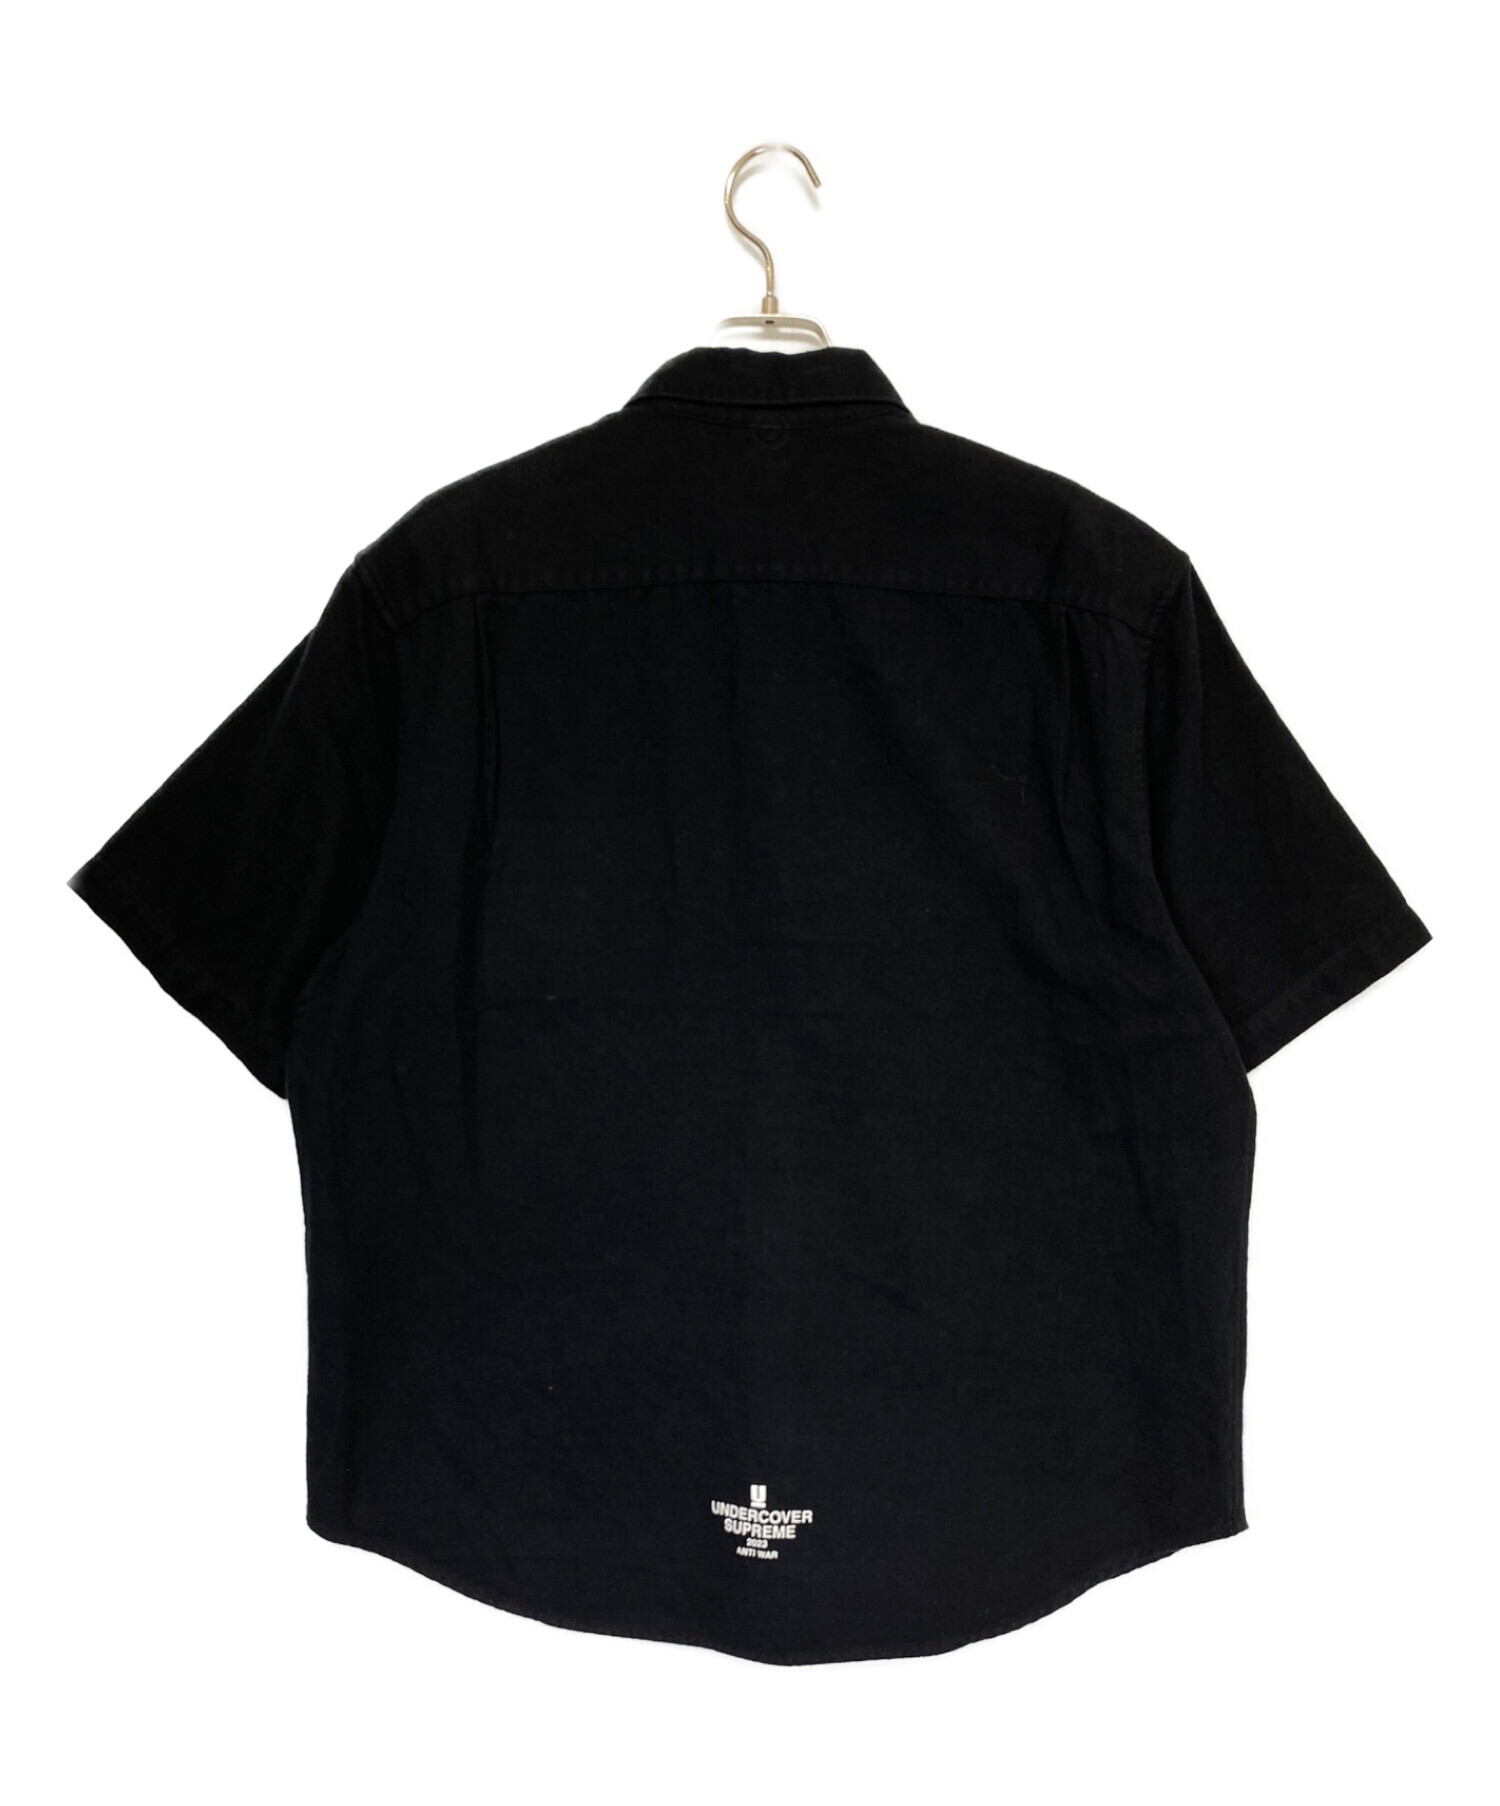 SUPREME (シュプリーム) UNDERCOVER (アンダーカバー) S/S Flannel Shirt ブラック サイズ:S